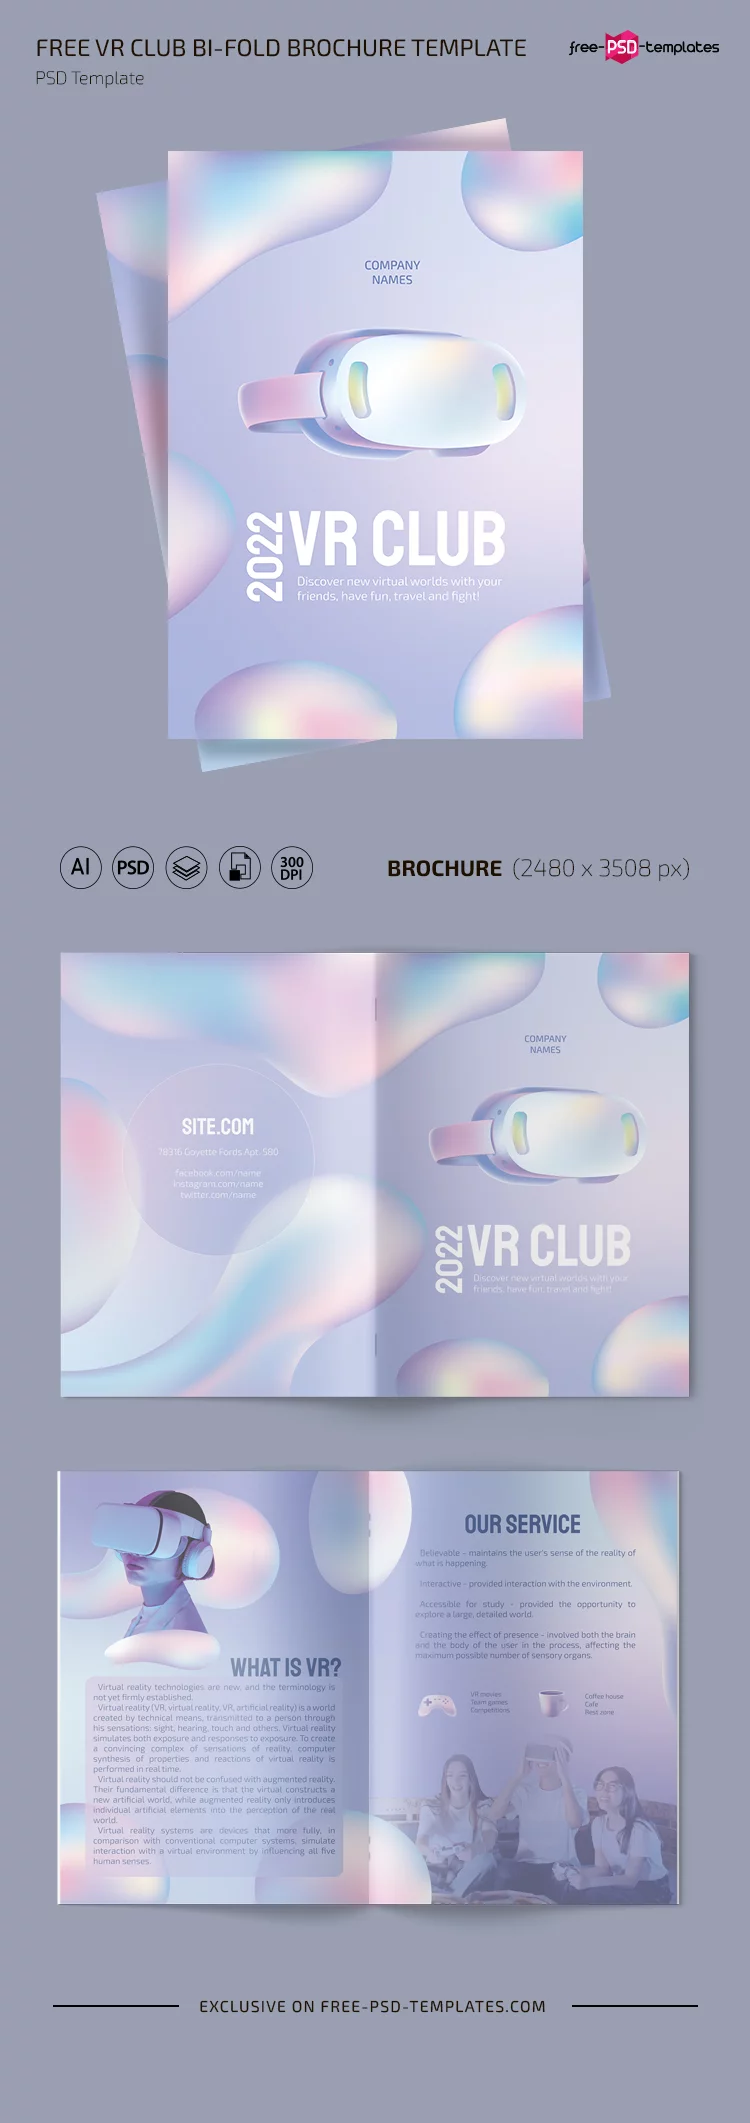 Free VR Club Bi-Fold Brochure PSD Template